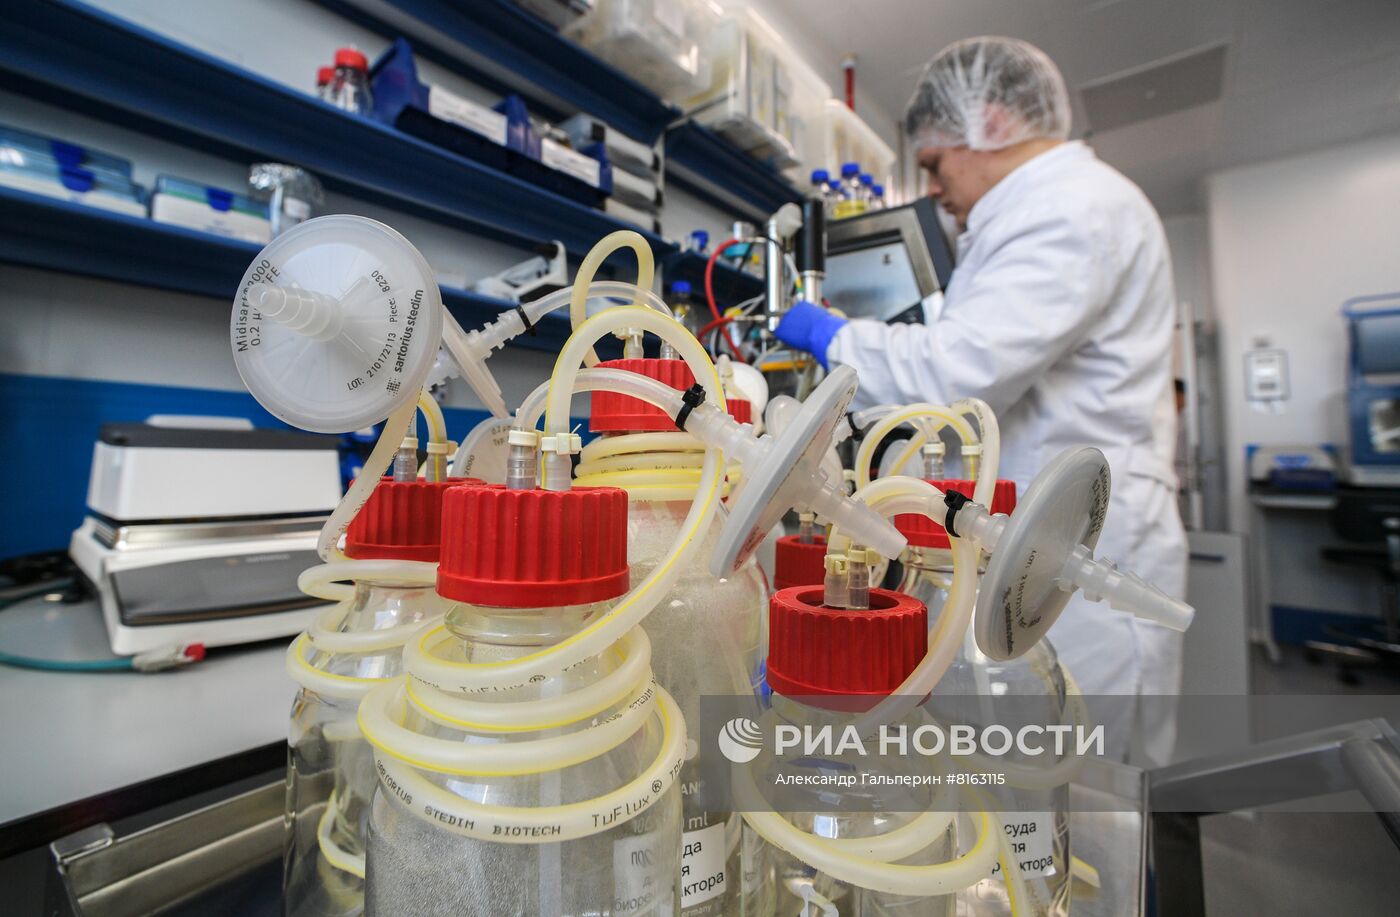 Лаборатория по производству вакцины "Конвасэл" для профилактики covid-19